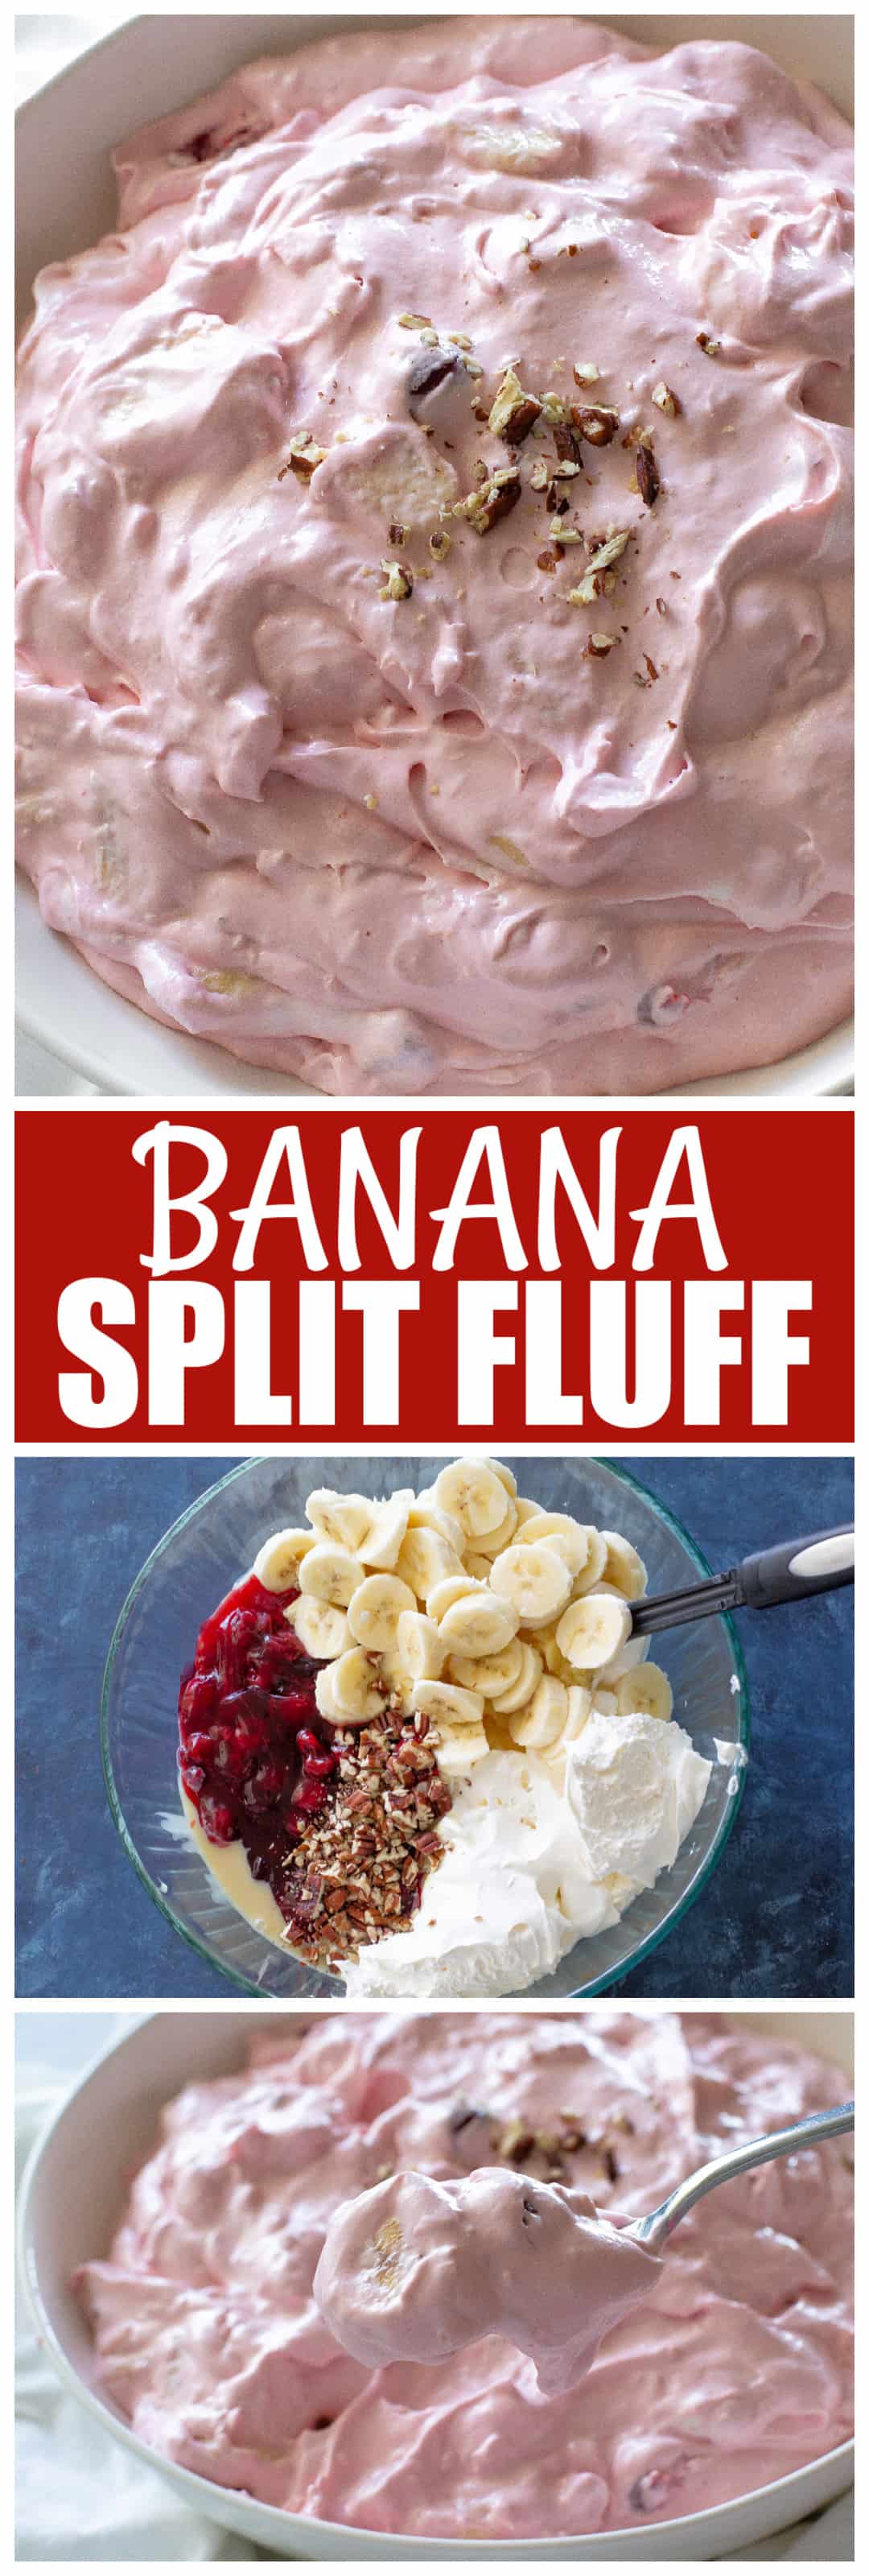 banana split fluff